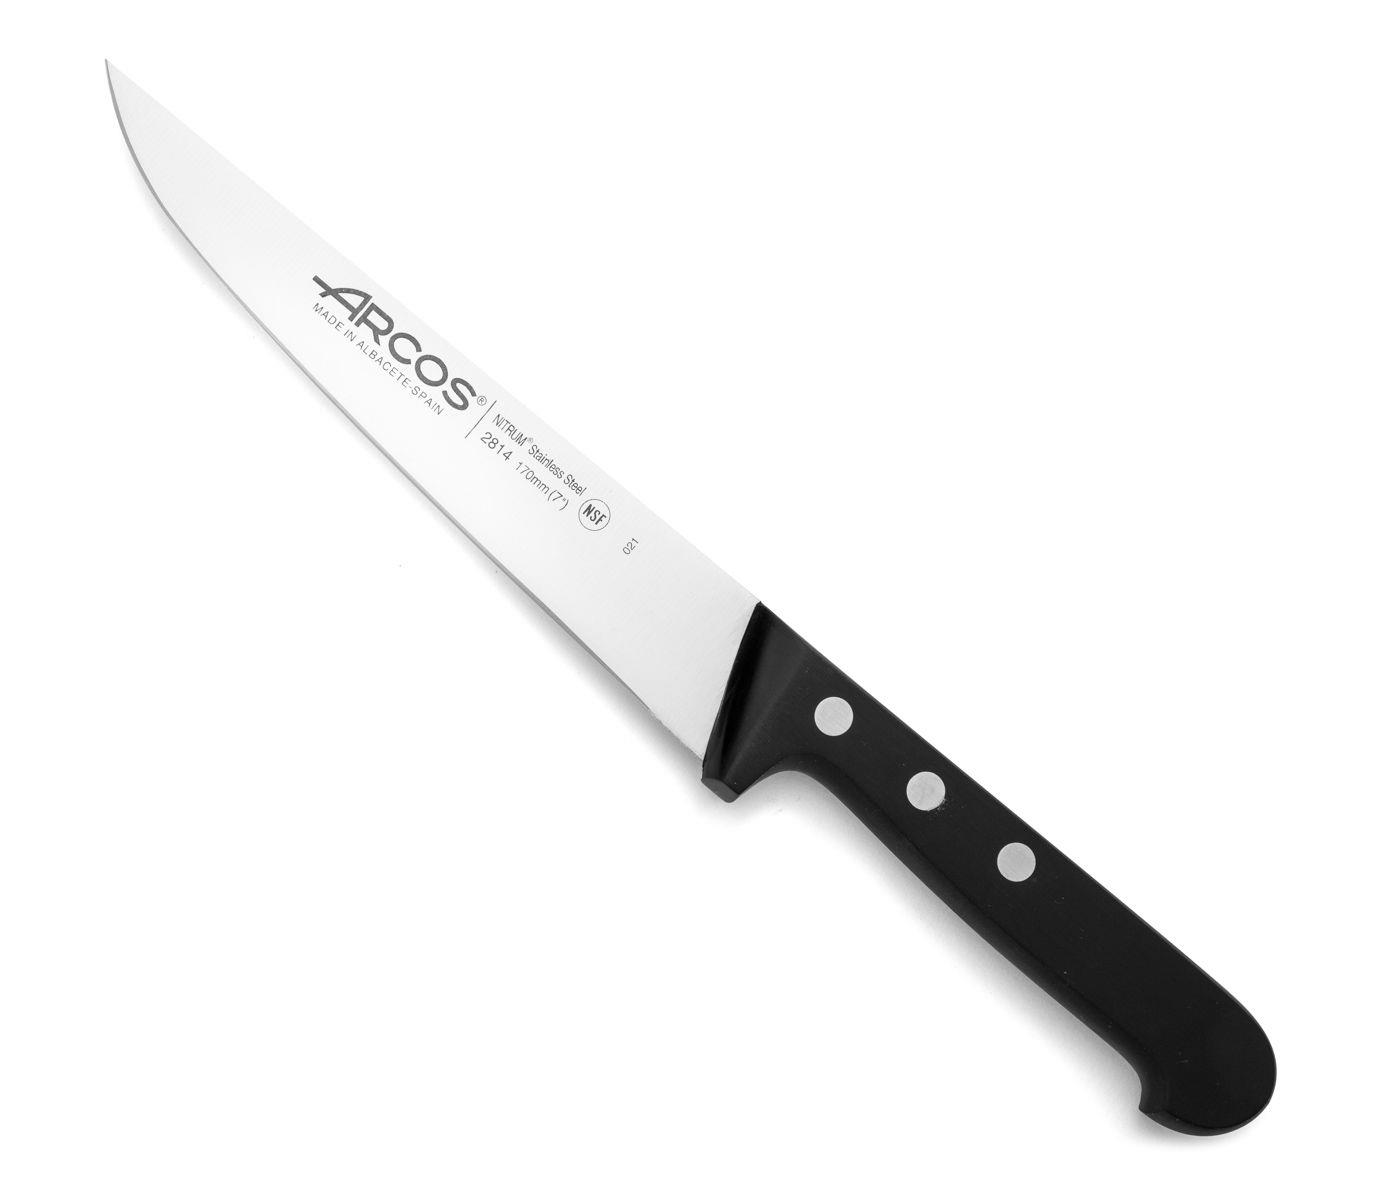 סכין מטבח - ארקוס דגם 2814-031